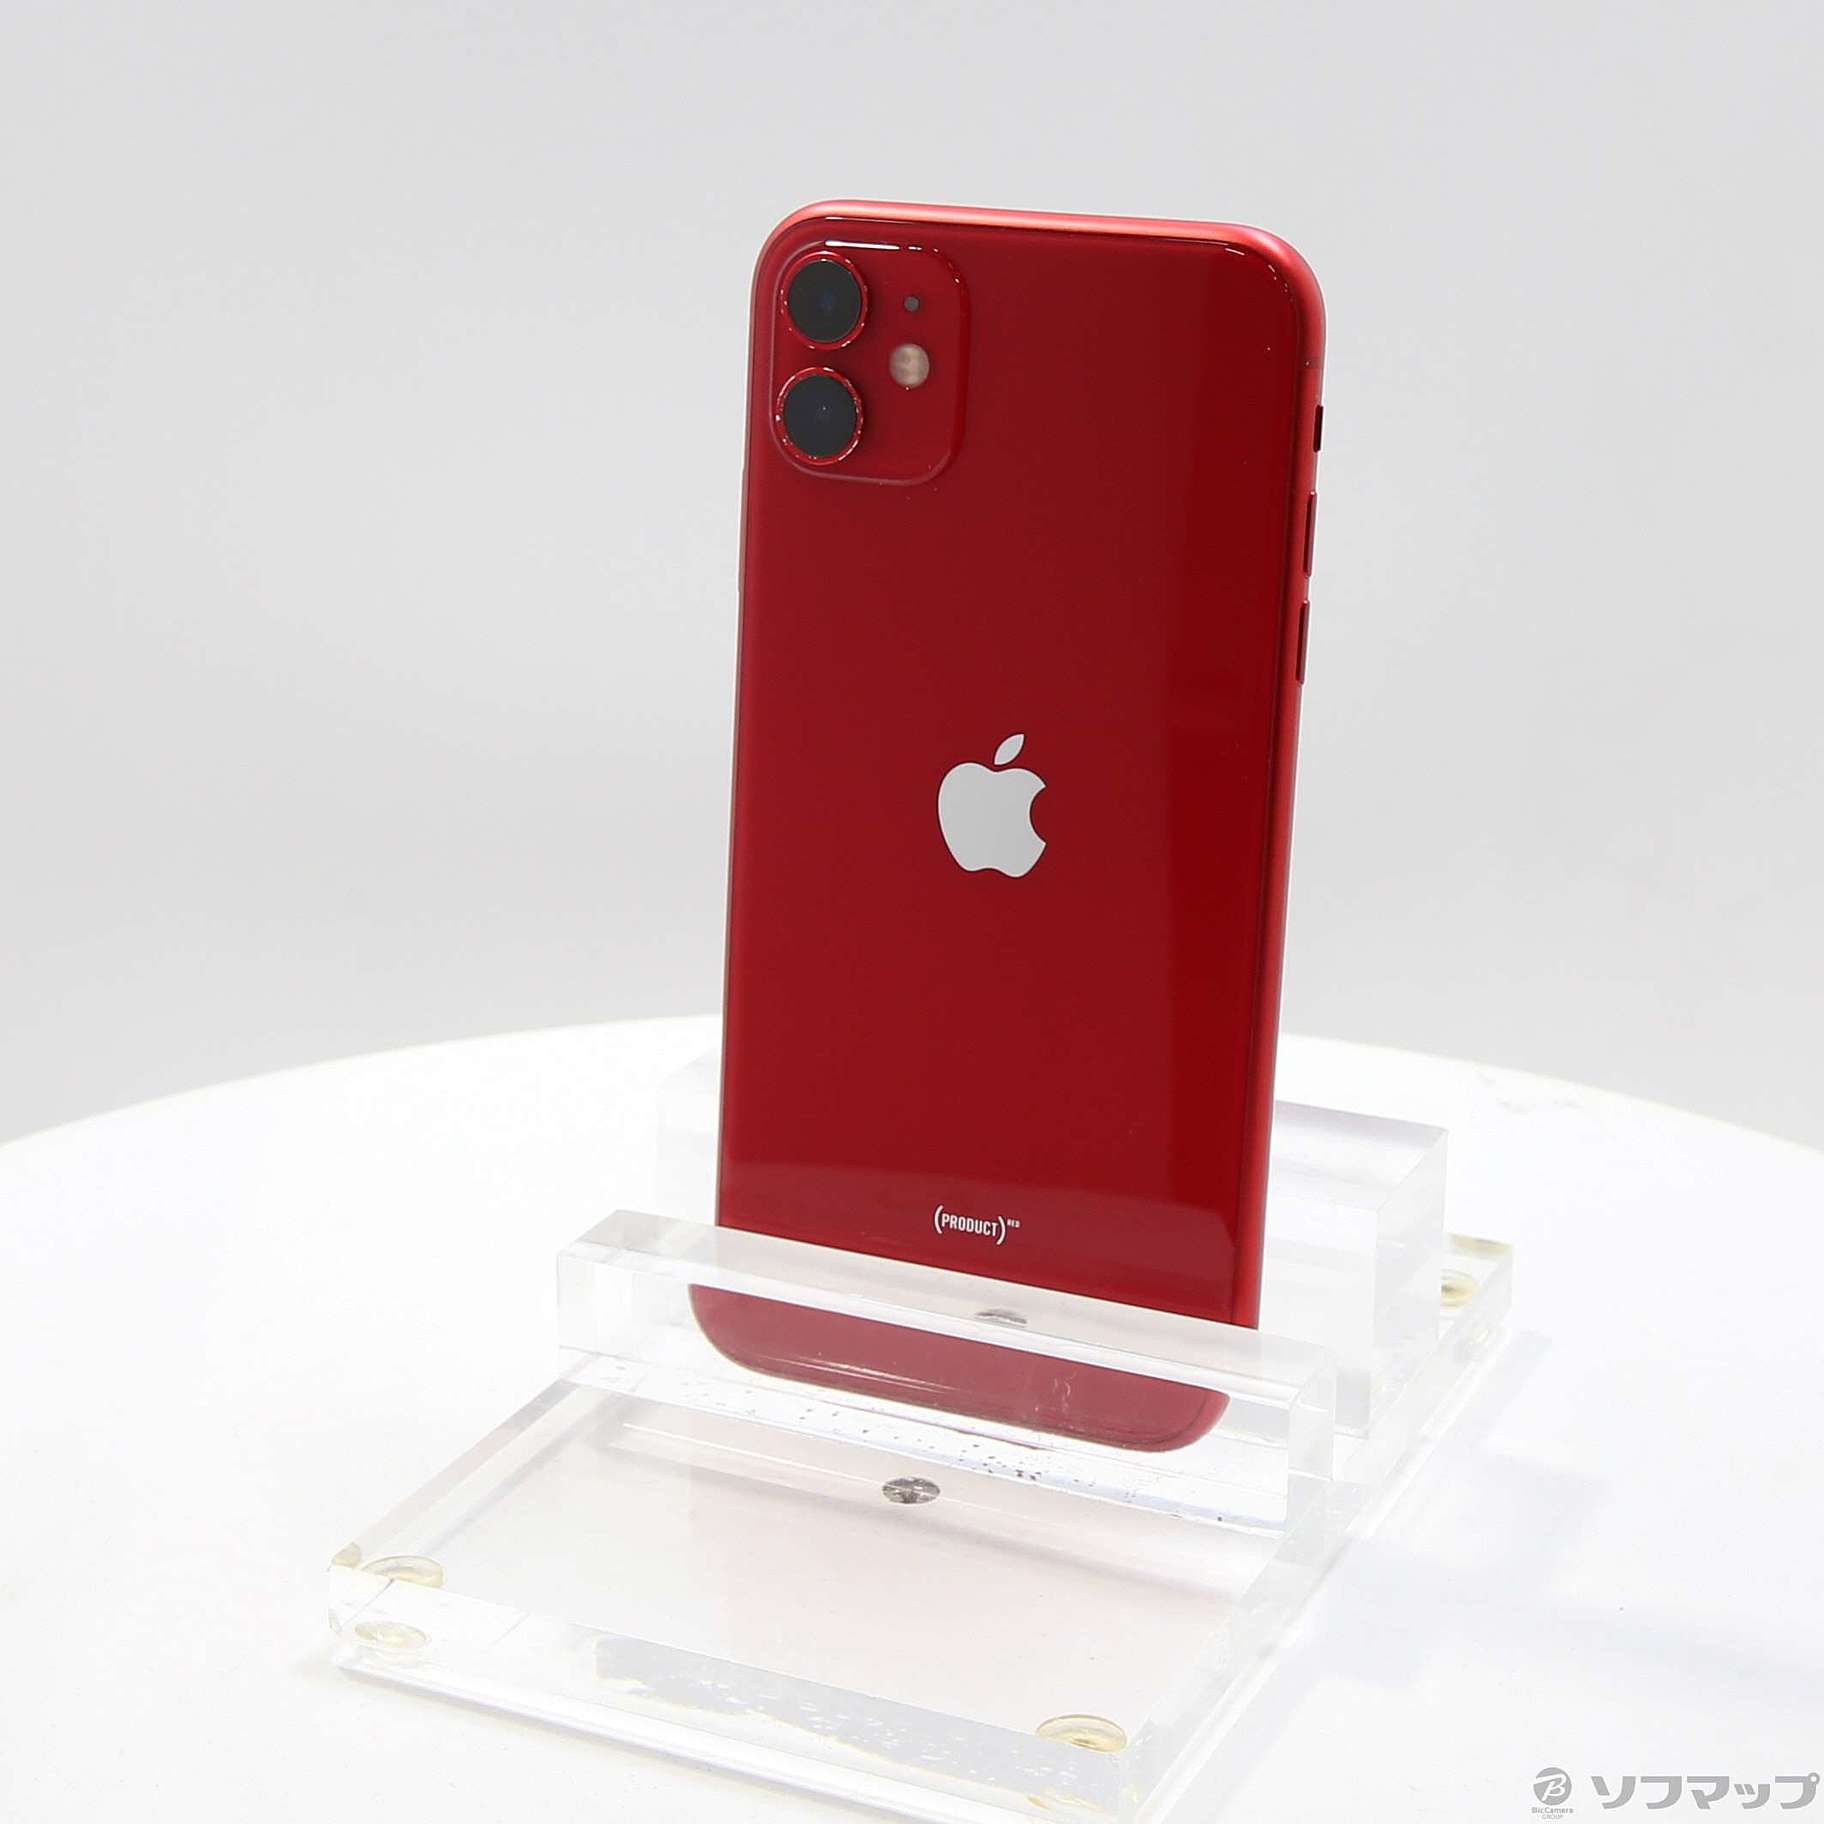 iPhone 11 64gb レッド 赤 専用希望価格はいくらでしょうか